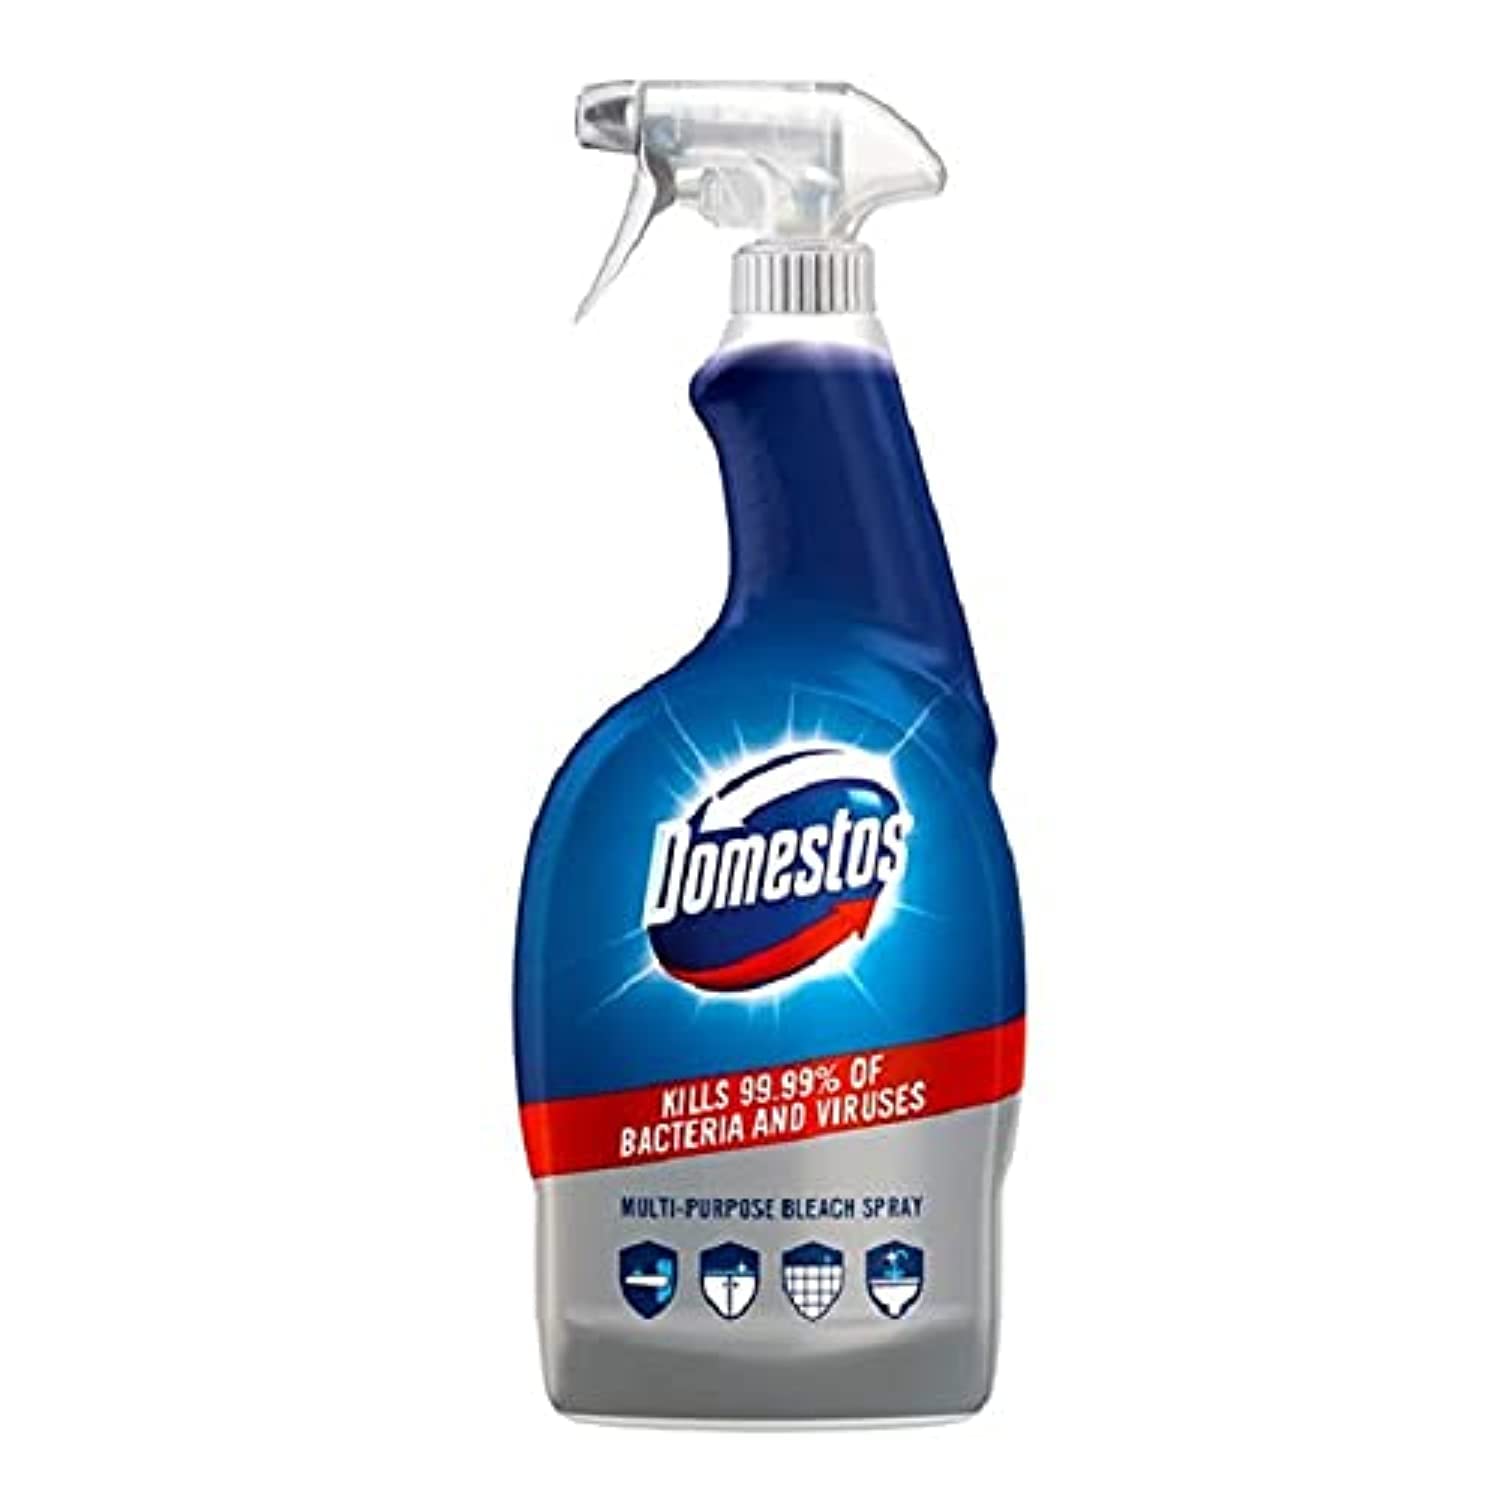 Domestos 450ml Multi-purpose bleach spray